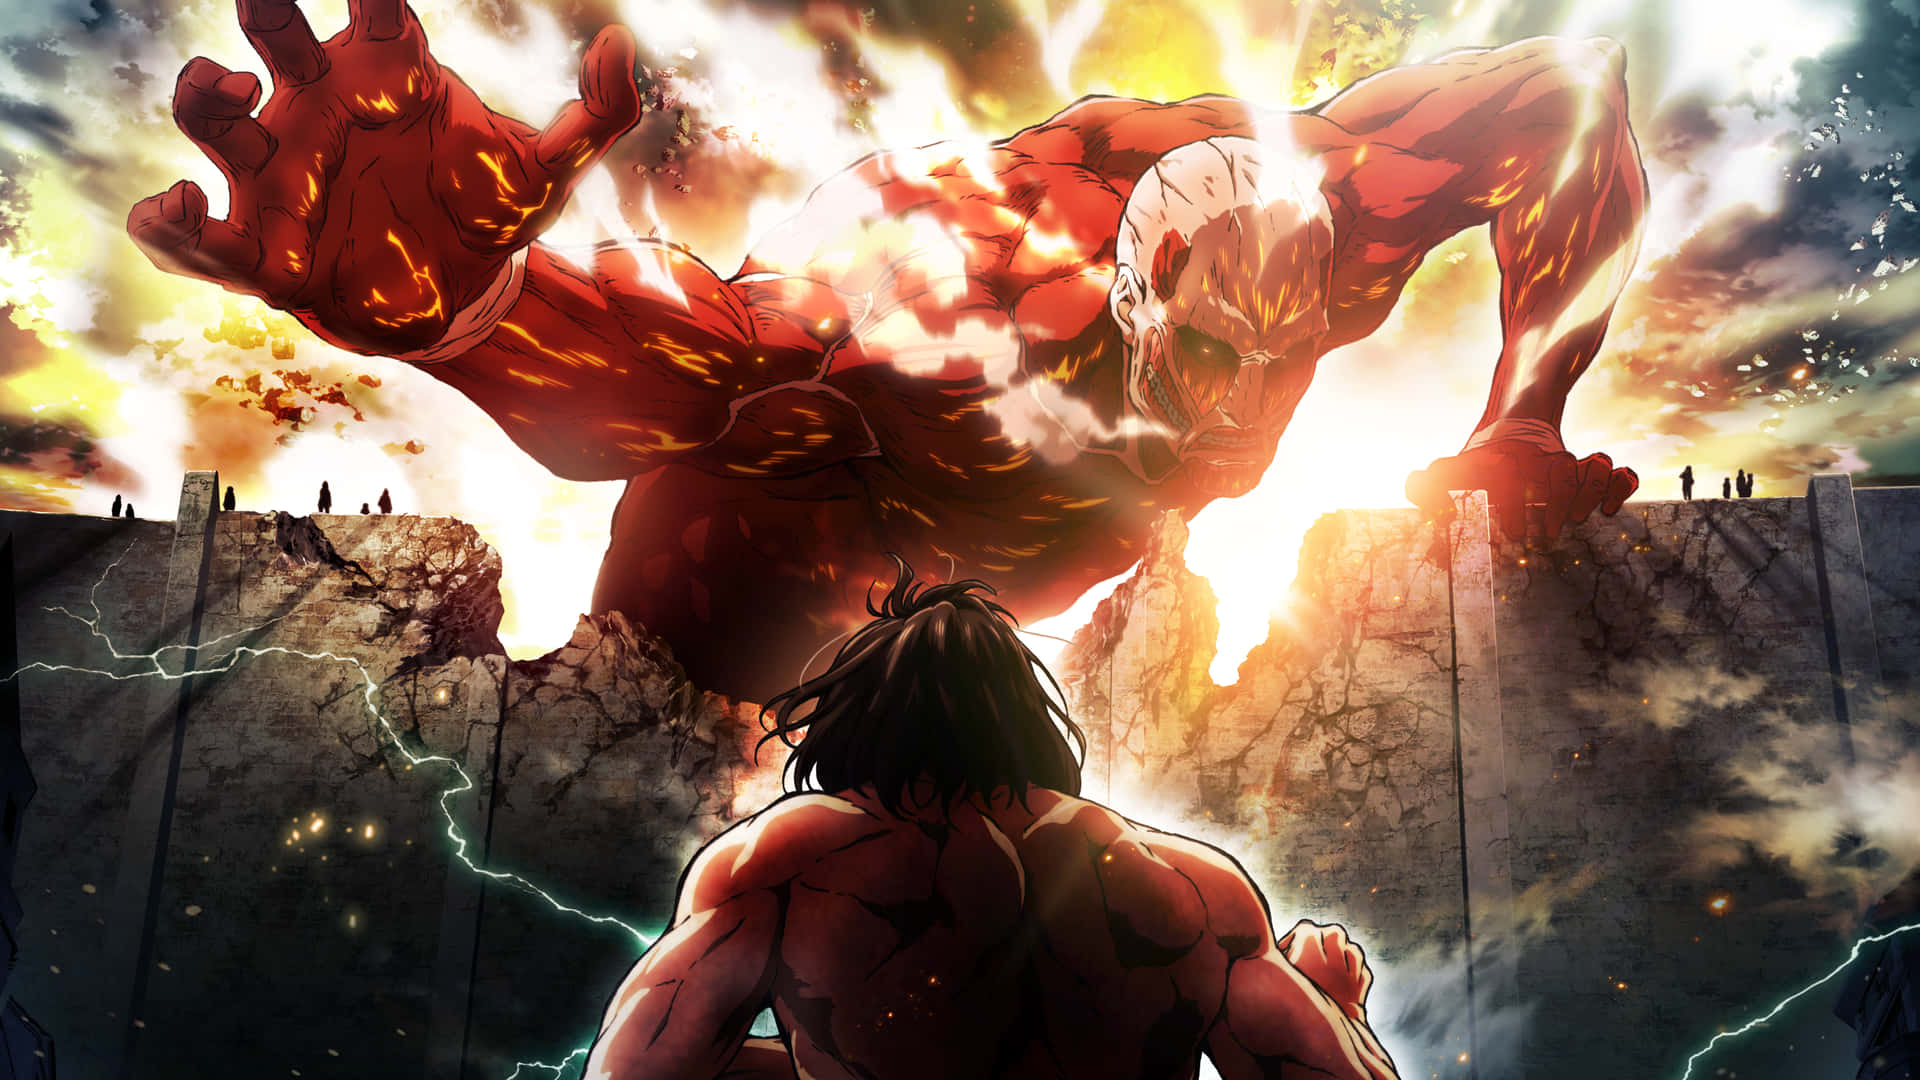 Lalotta Per Salvare L'umanità Nella Coinvolgente Serie Anime Attack On Titan